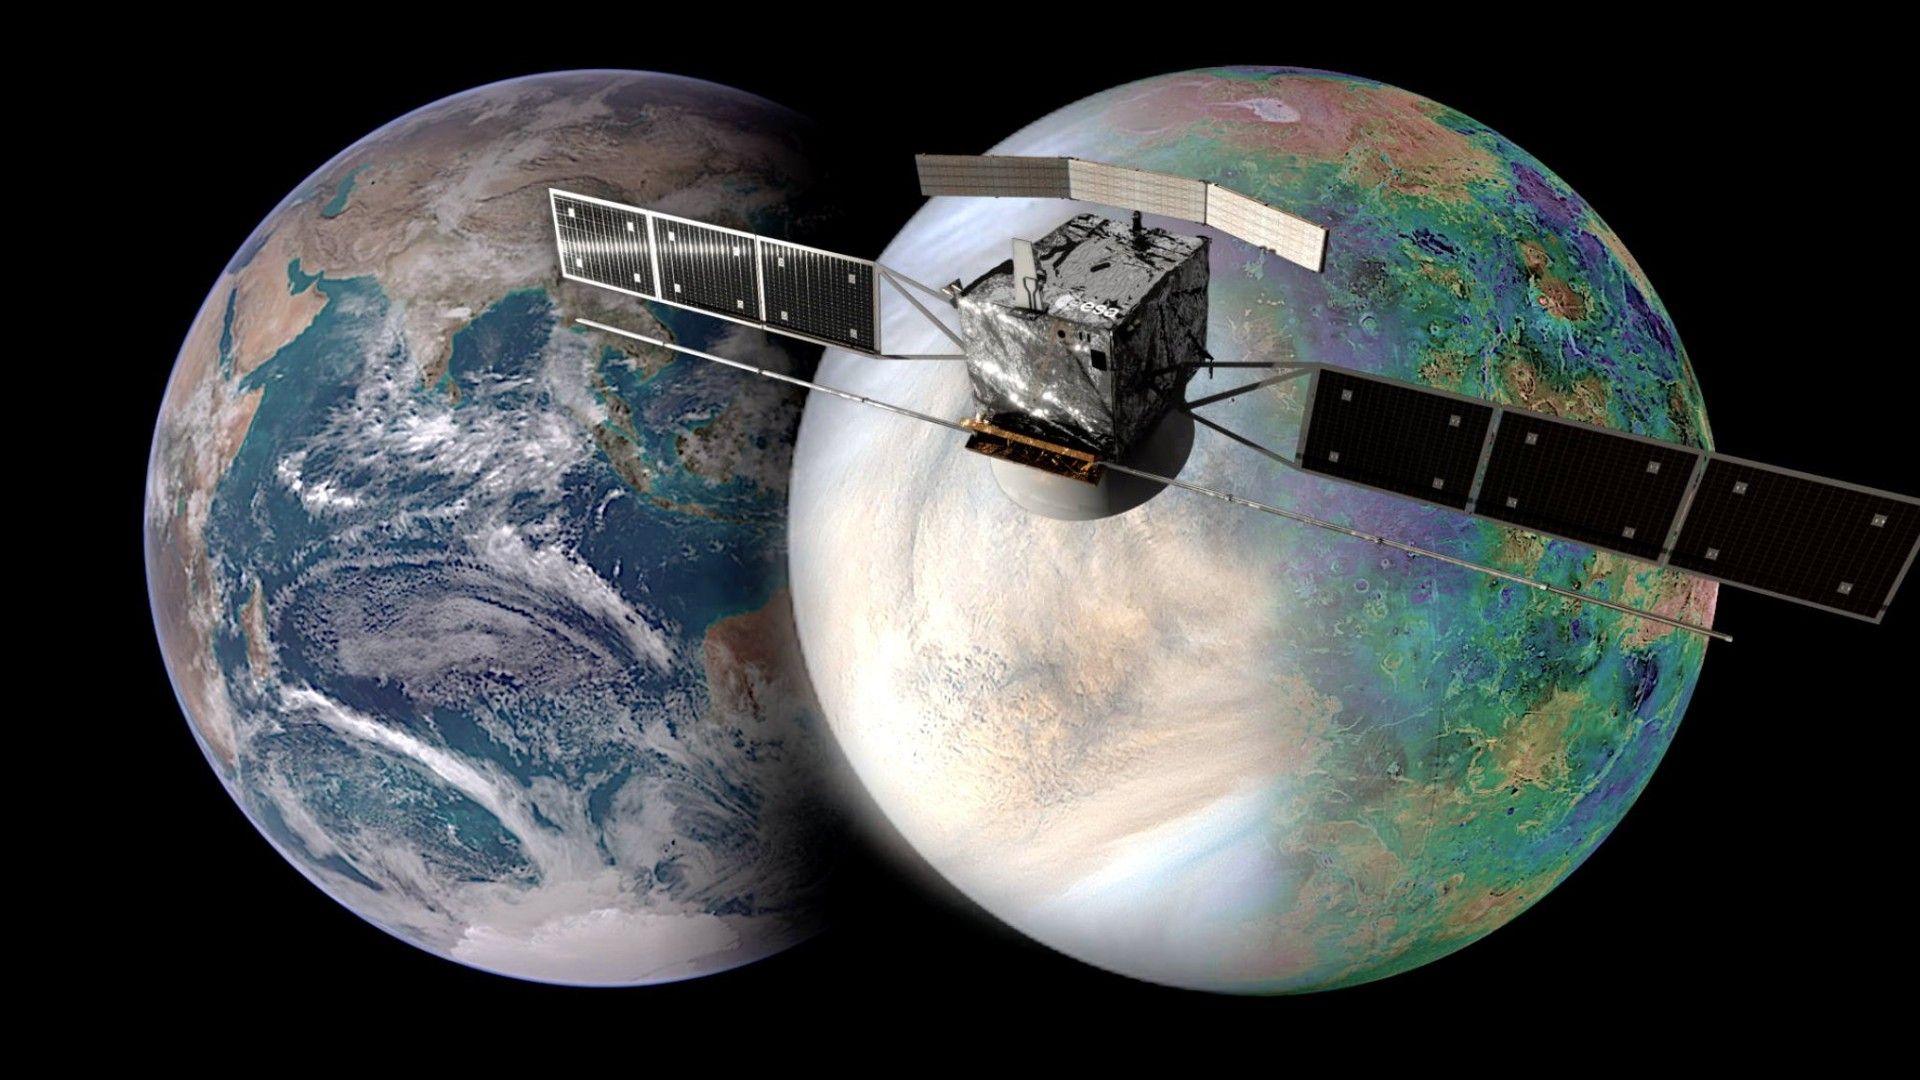 Agenția Spațială Europeană va trimite sonde pentru a studia Venus și undele sale gravitaționale